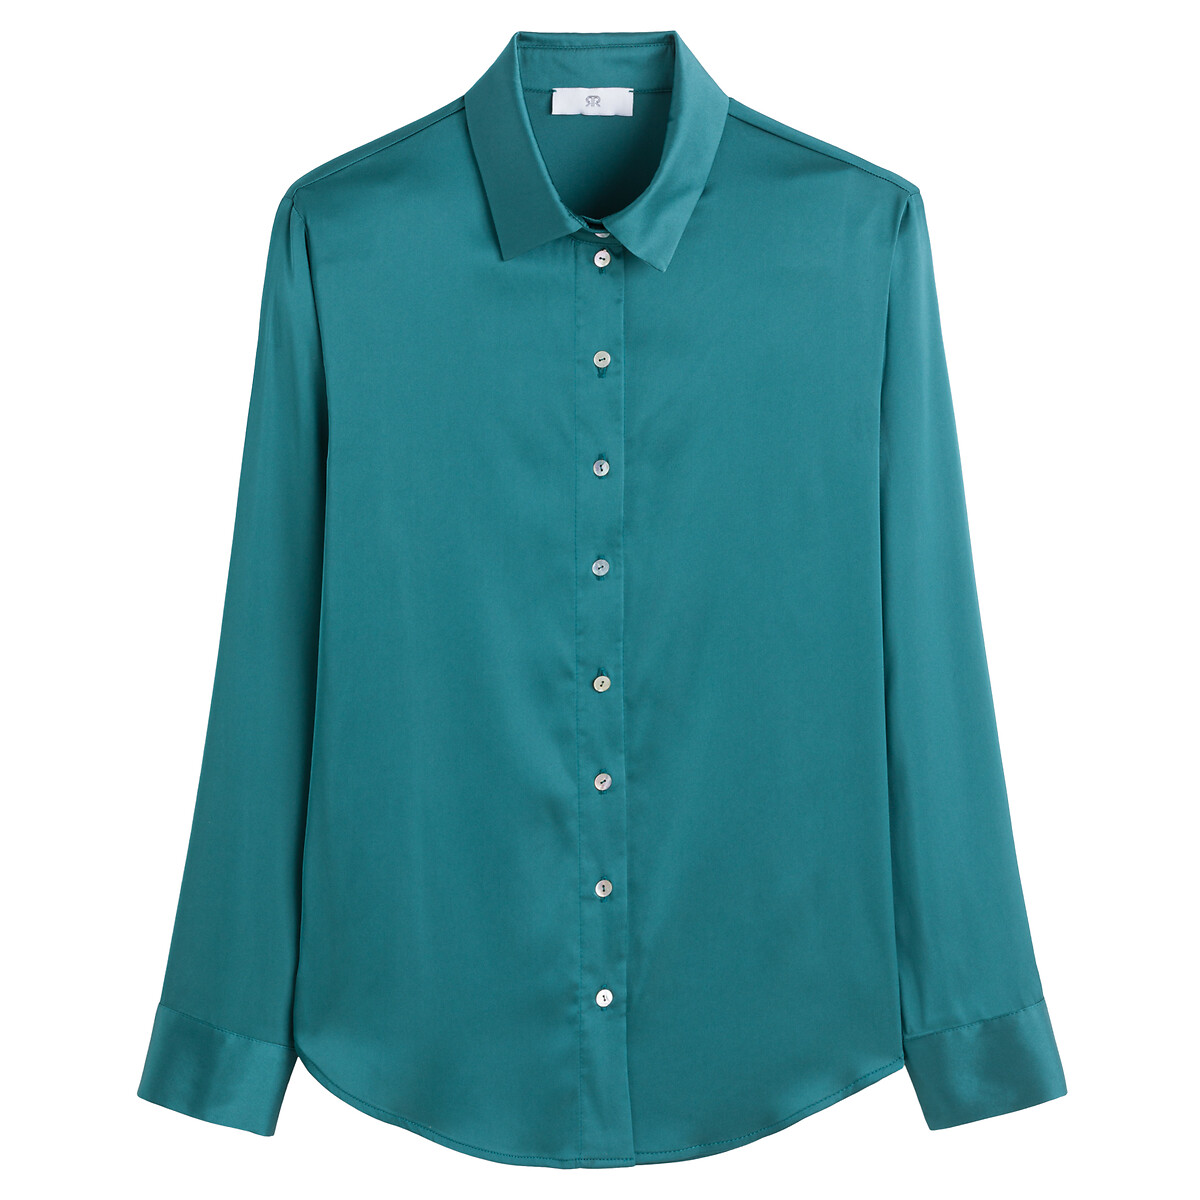 Рубашка С длинными рукавами атласная 50 (FR) - 56 (RUS) зеленый LaRedoute, размер 50 (FR) - 56 (RUS) Рубашка С длинными рукавами атласная 50 (FR) - 56 (RUS) зеленый - фото 5